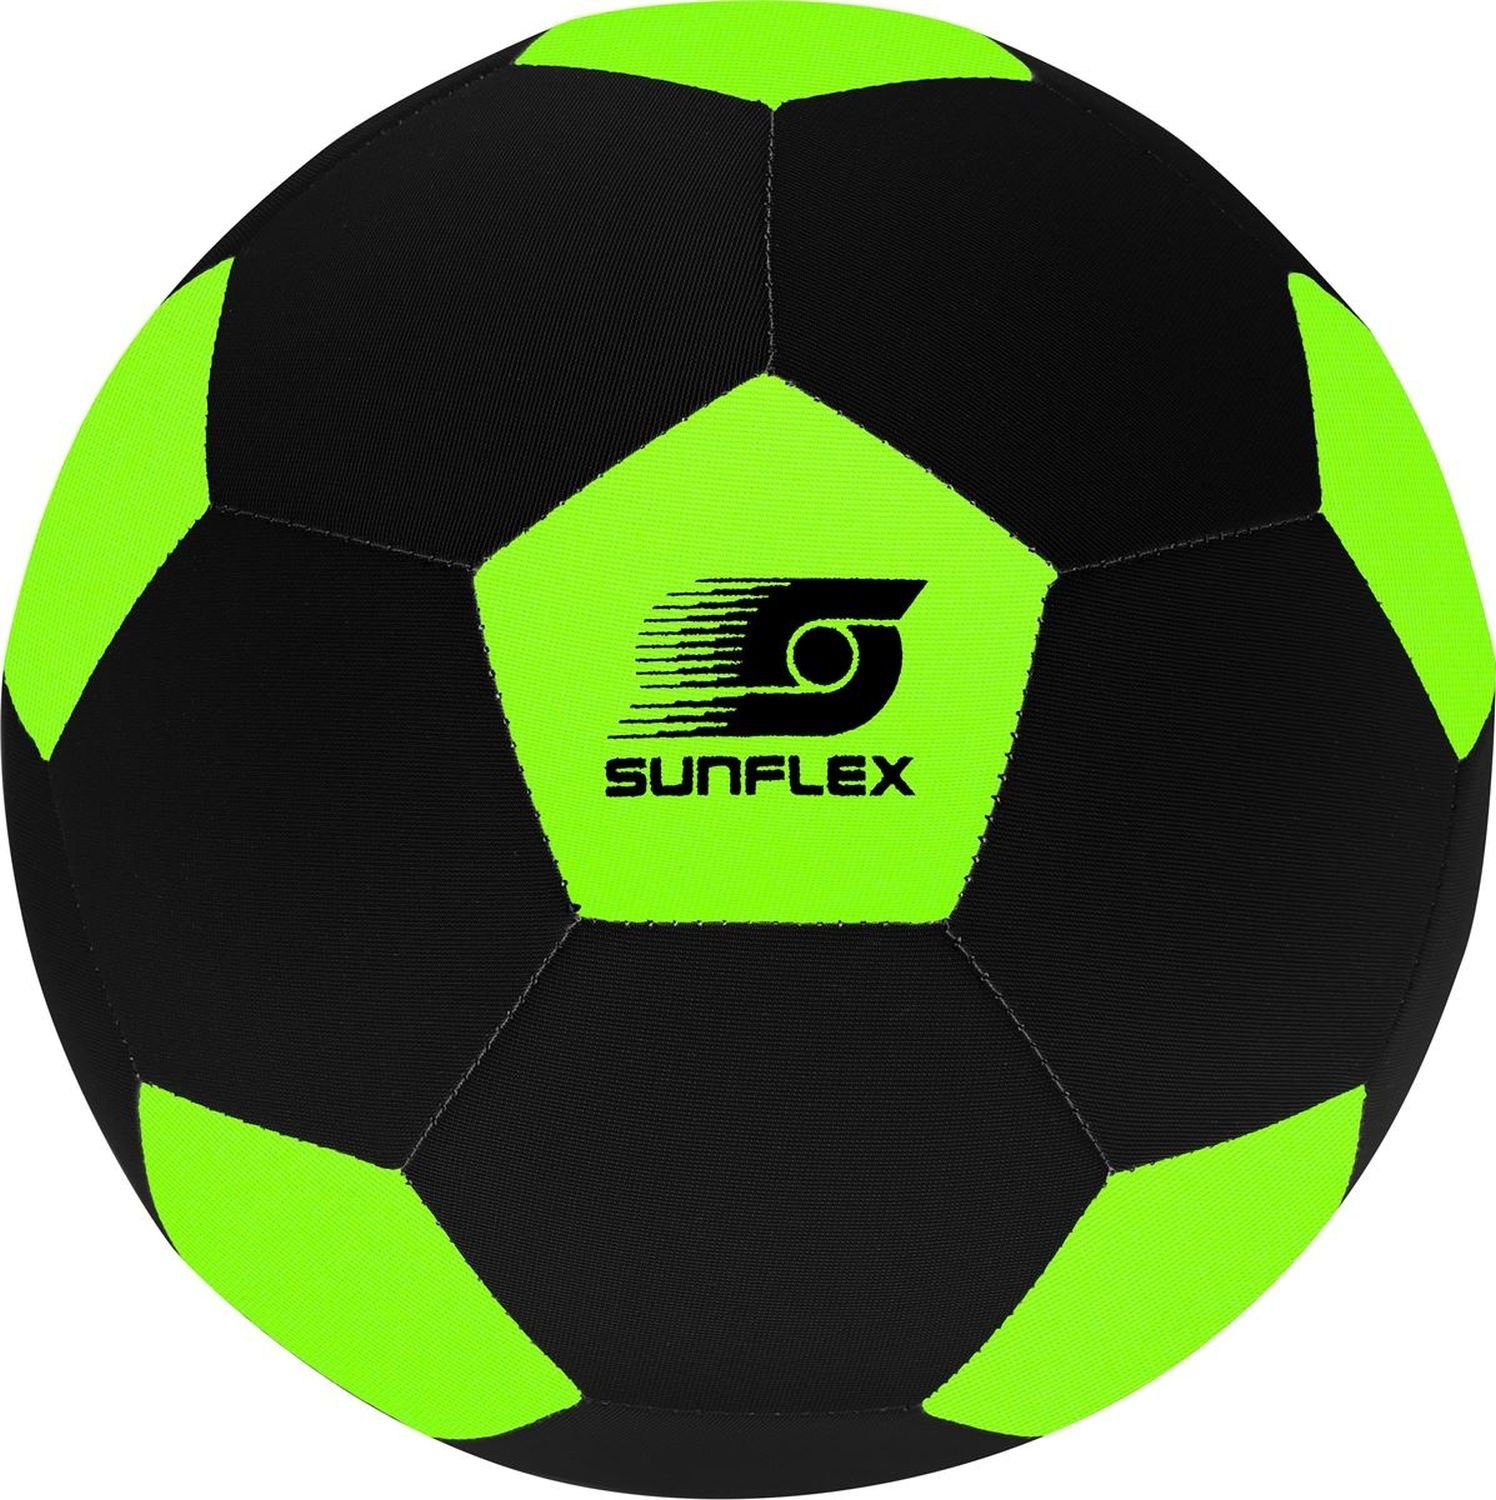 Sunflex Fußball Neopren Fußball, Größe 5 Grün